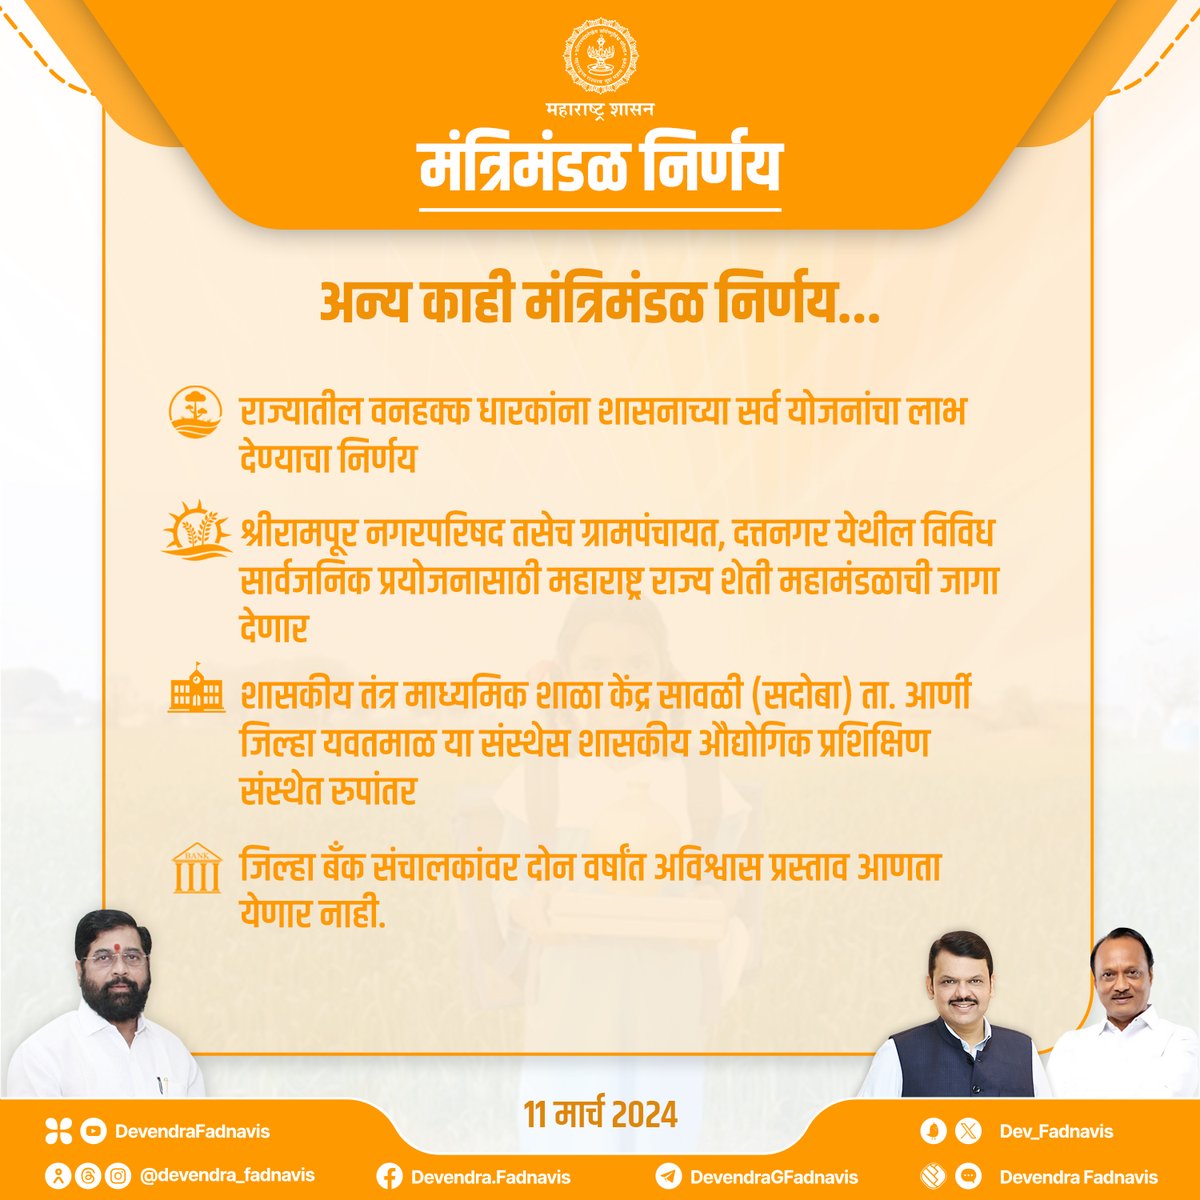 अन्य काही मंत्रिमंडळ निर्णय...

#मंत्रिमंडळनिर्णय #Maharashtra #CabinetDecision #MaharashtraCabinet